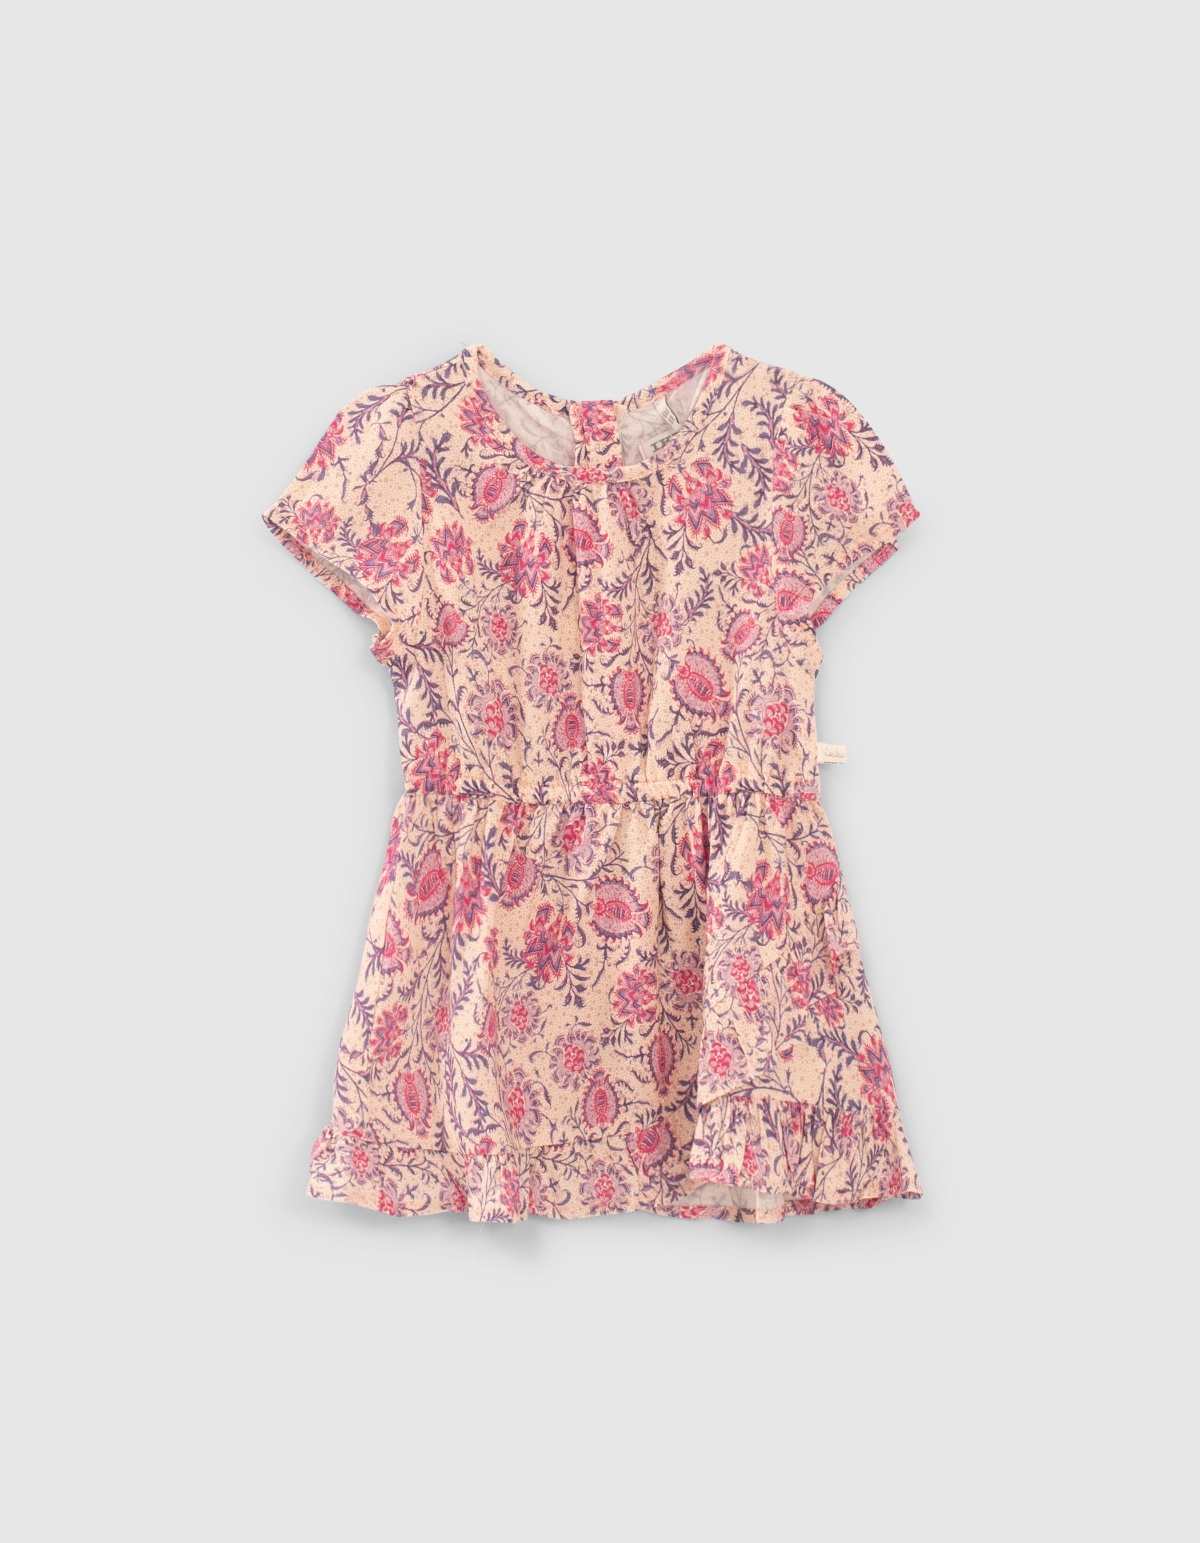 Robe rose imprimé floral cachemire Lenzing™ Ecovero™ bébé fille